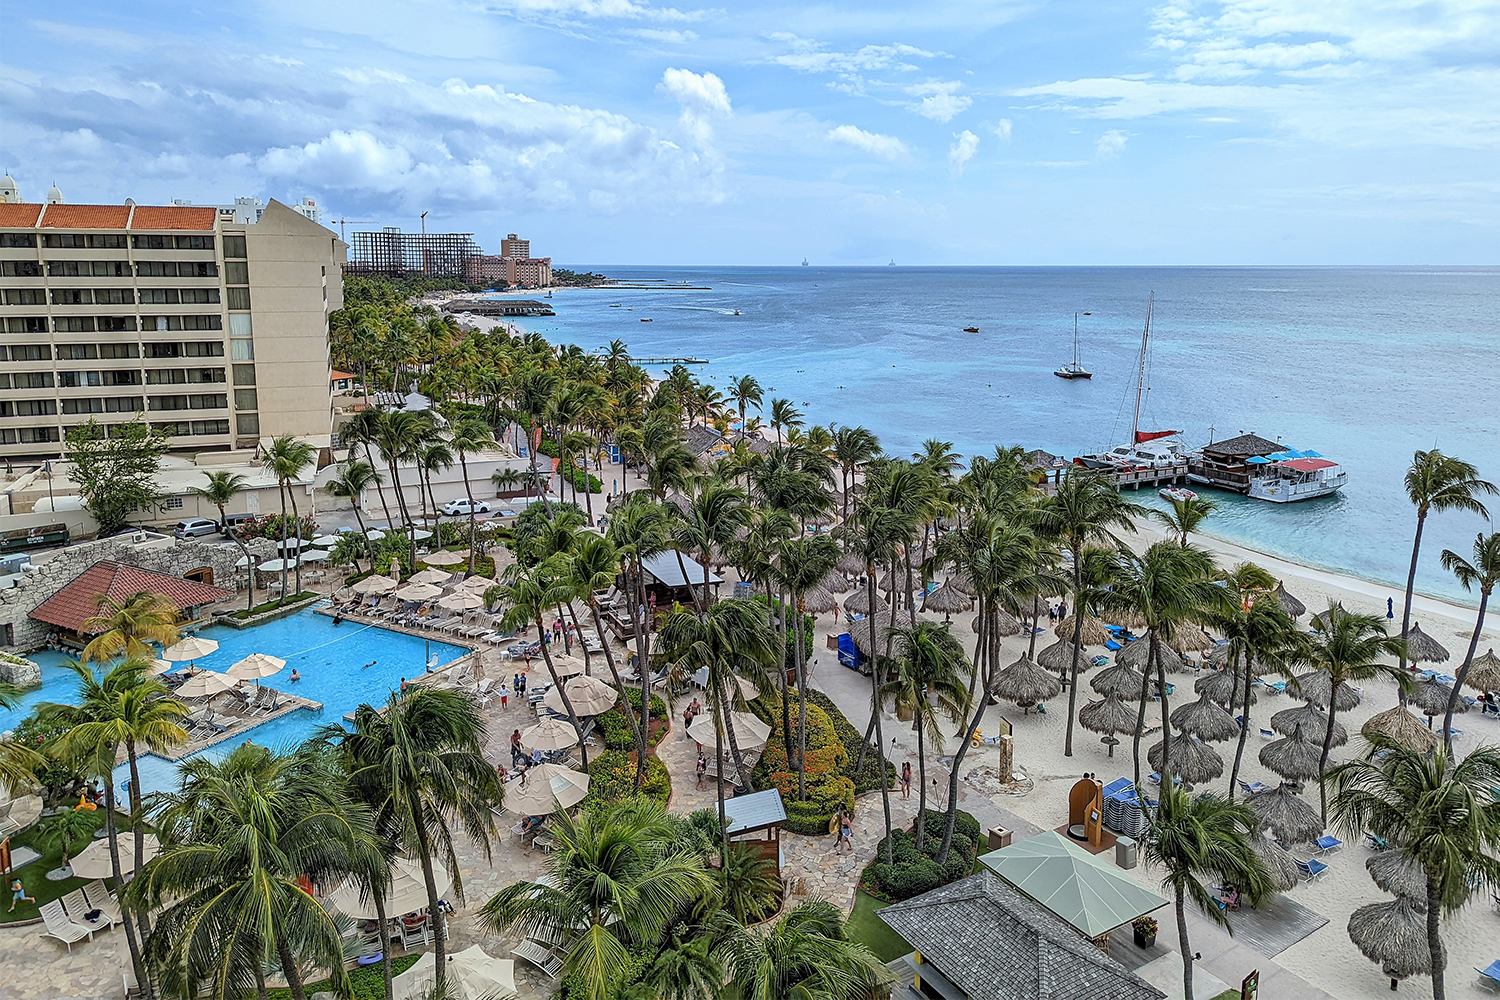 A view looking down at the pool, beach and ocean of the Hyatt Regency Aruba Resort